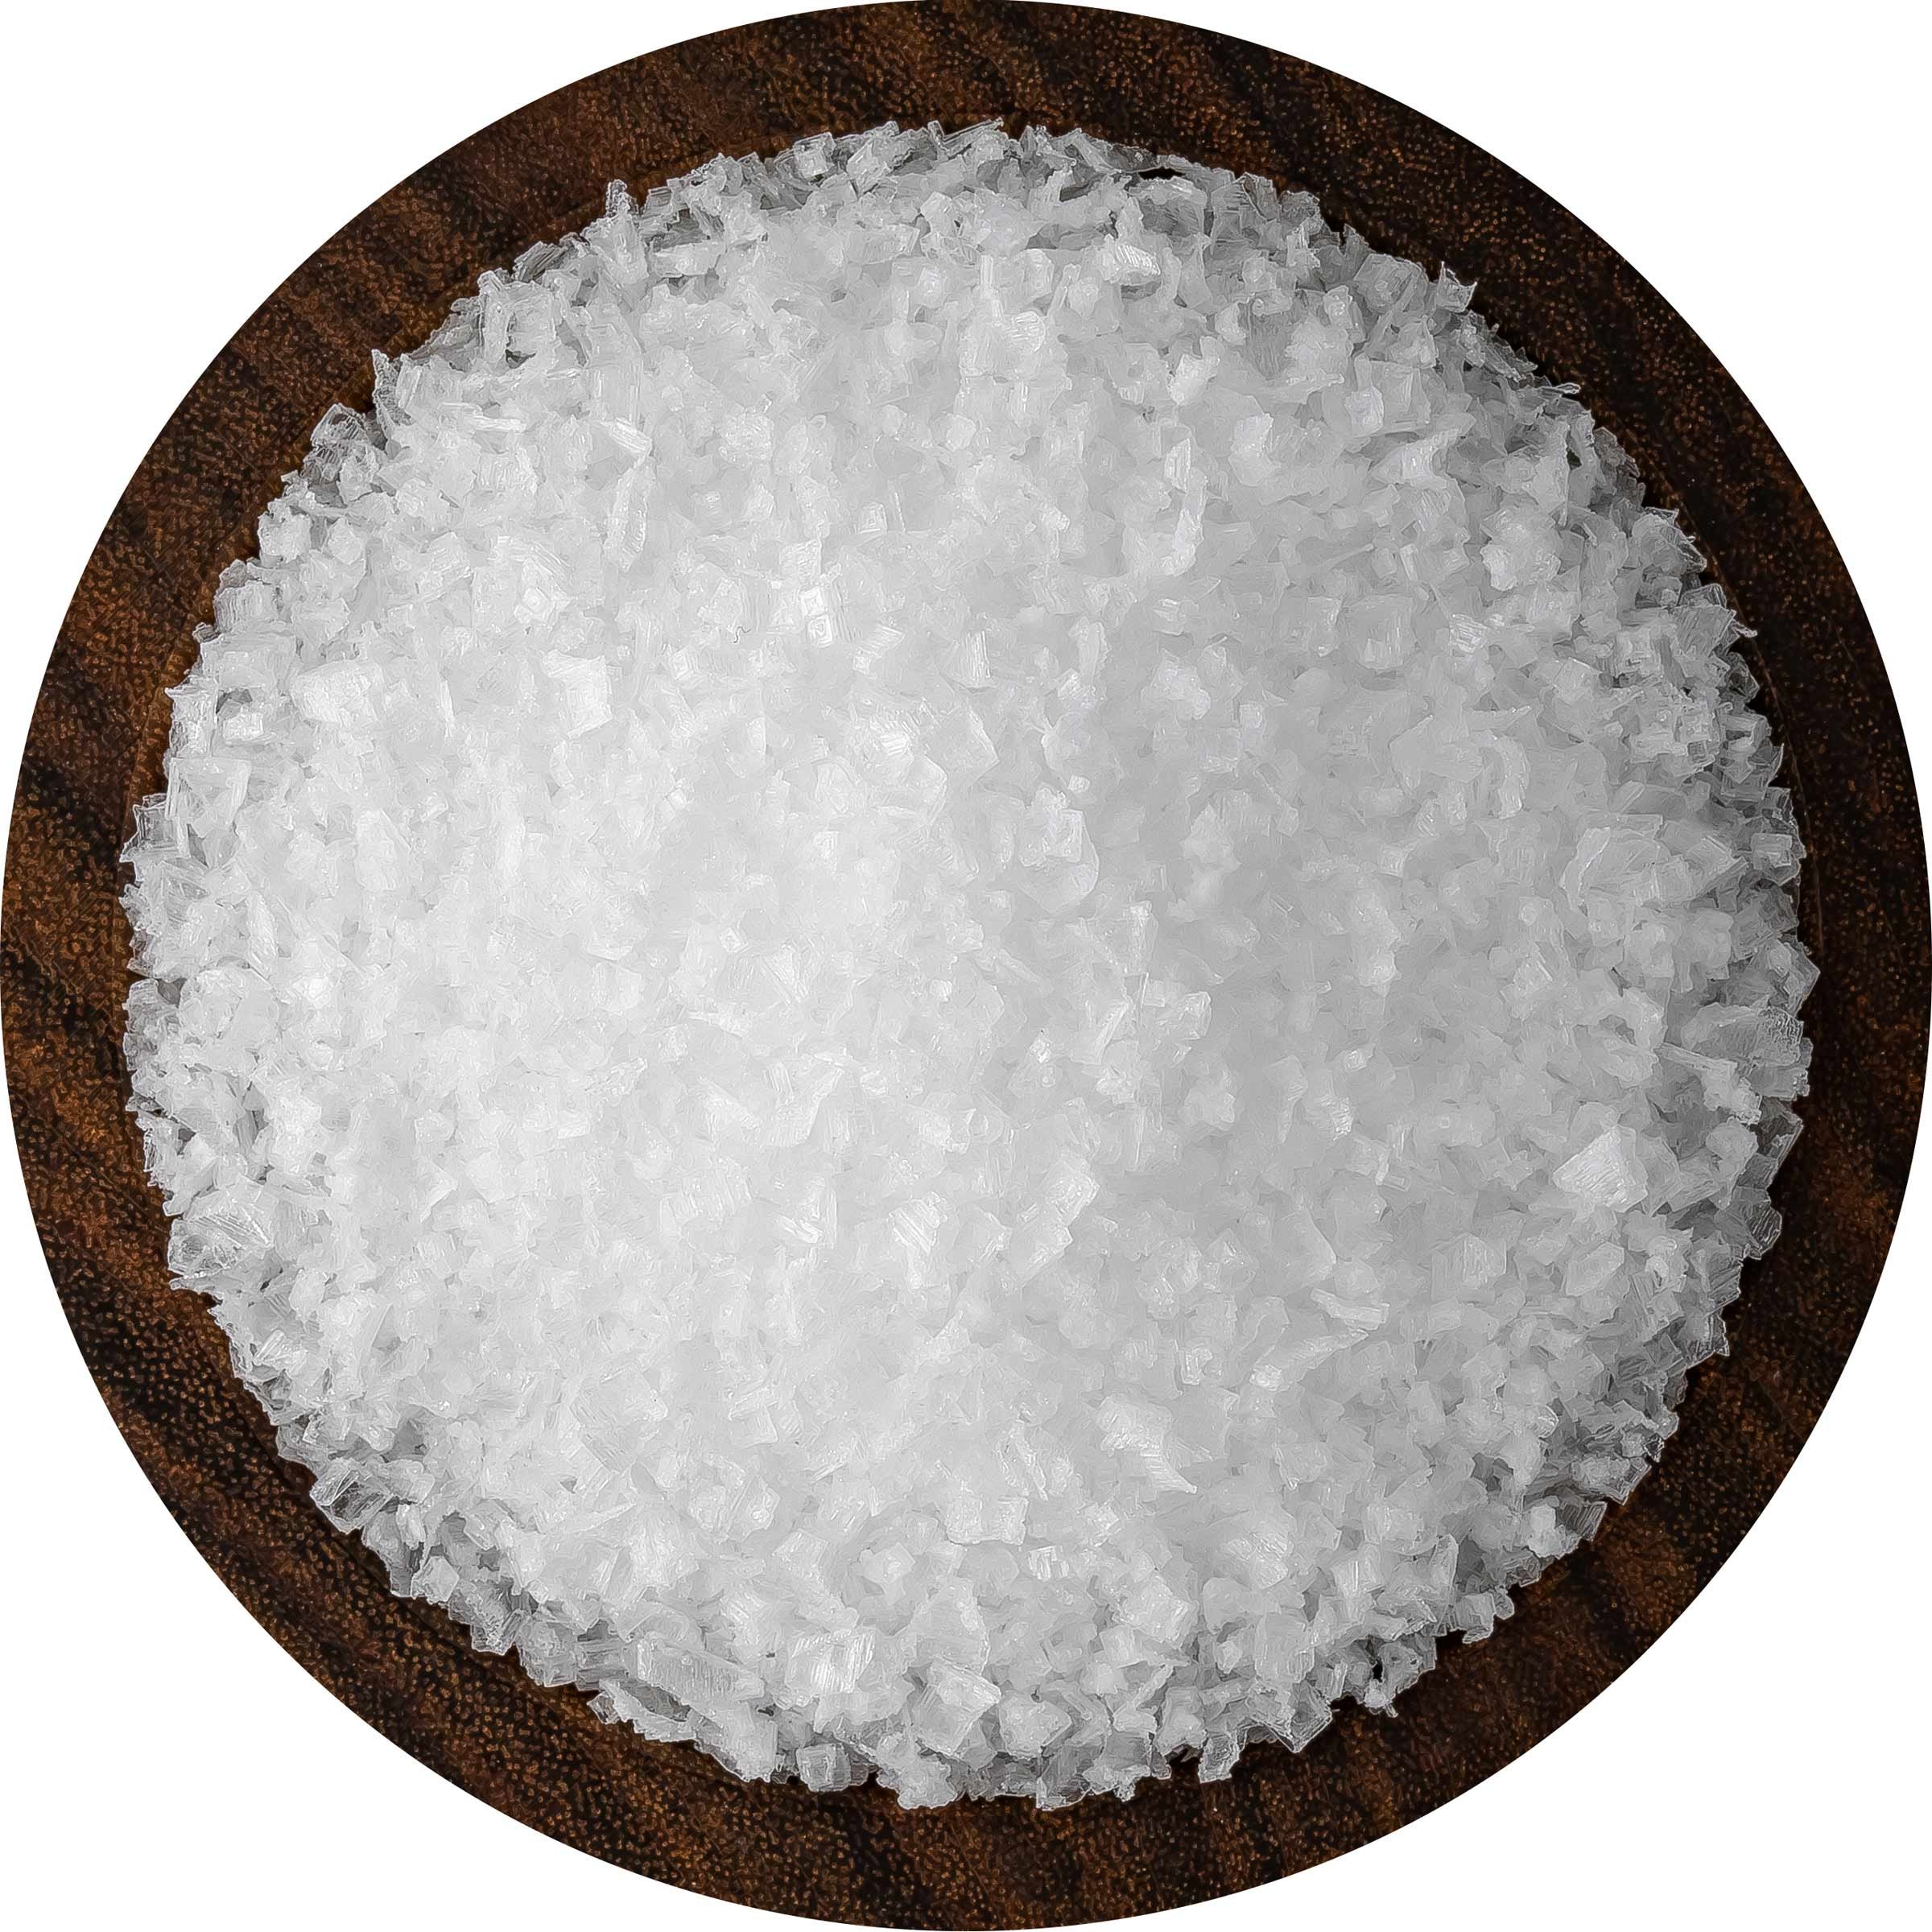 Snowflake Salt® Pacific Northwest Sea Salt | SaltWorks®